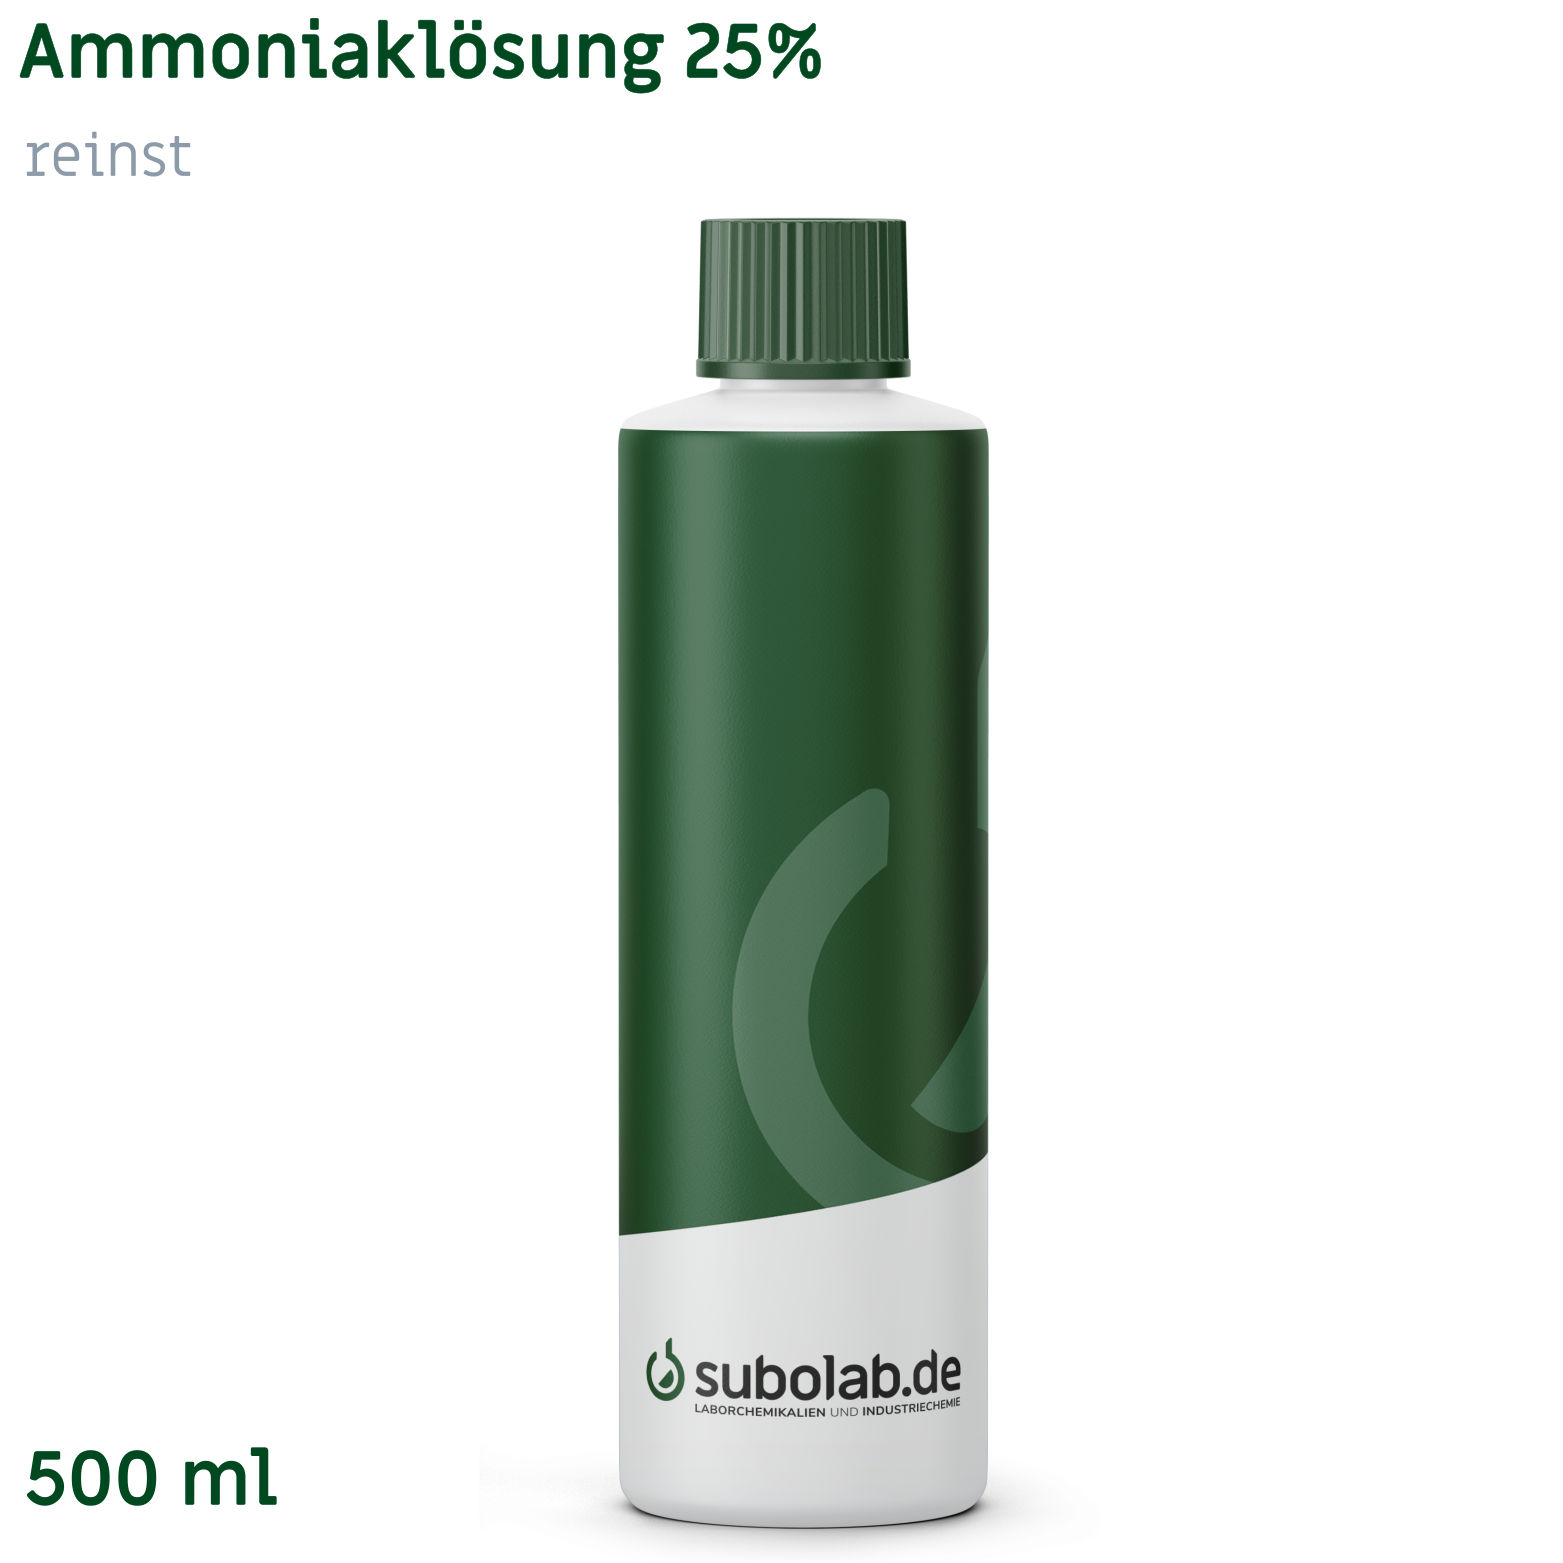 Bild von Ammoniaklösung 25% reinst (500 ml)